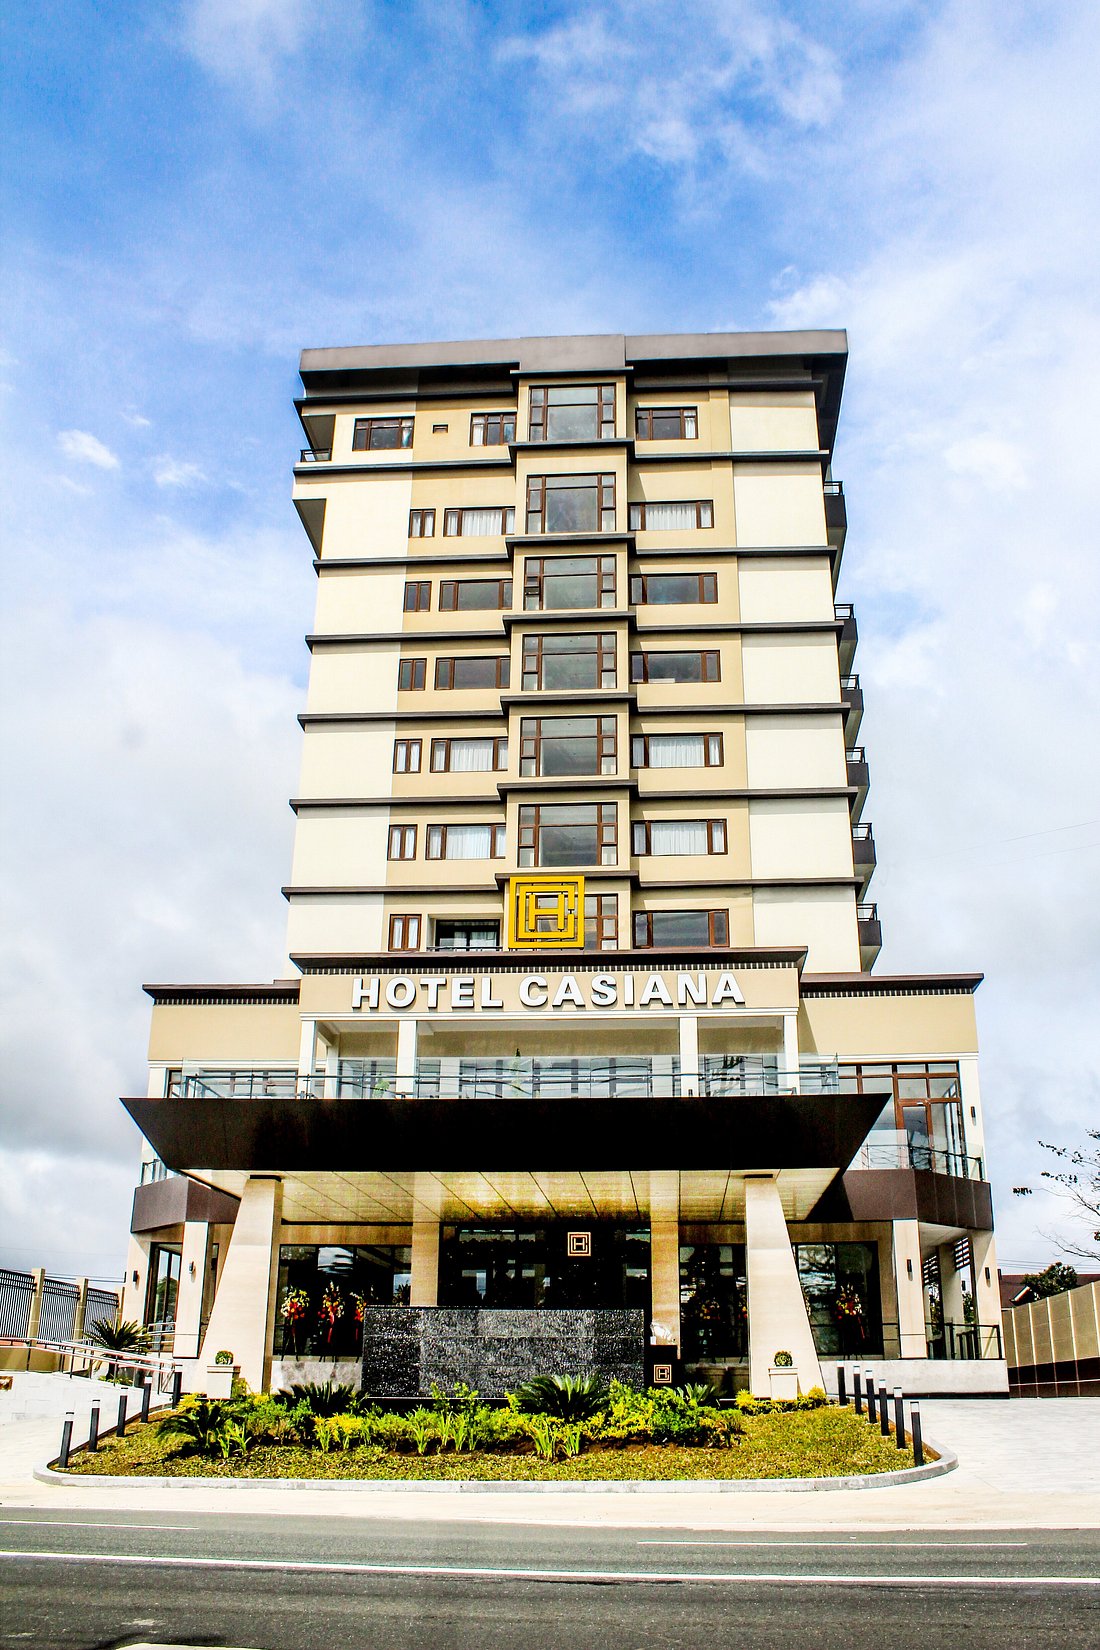 Hotel Casiana Tagaytay - Managed by Enderun Hotels, hotel in Tagaytay